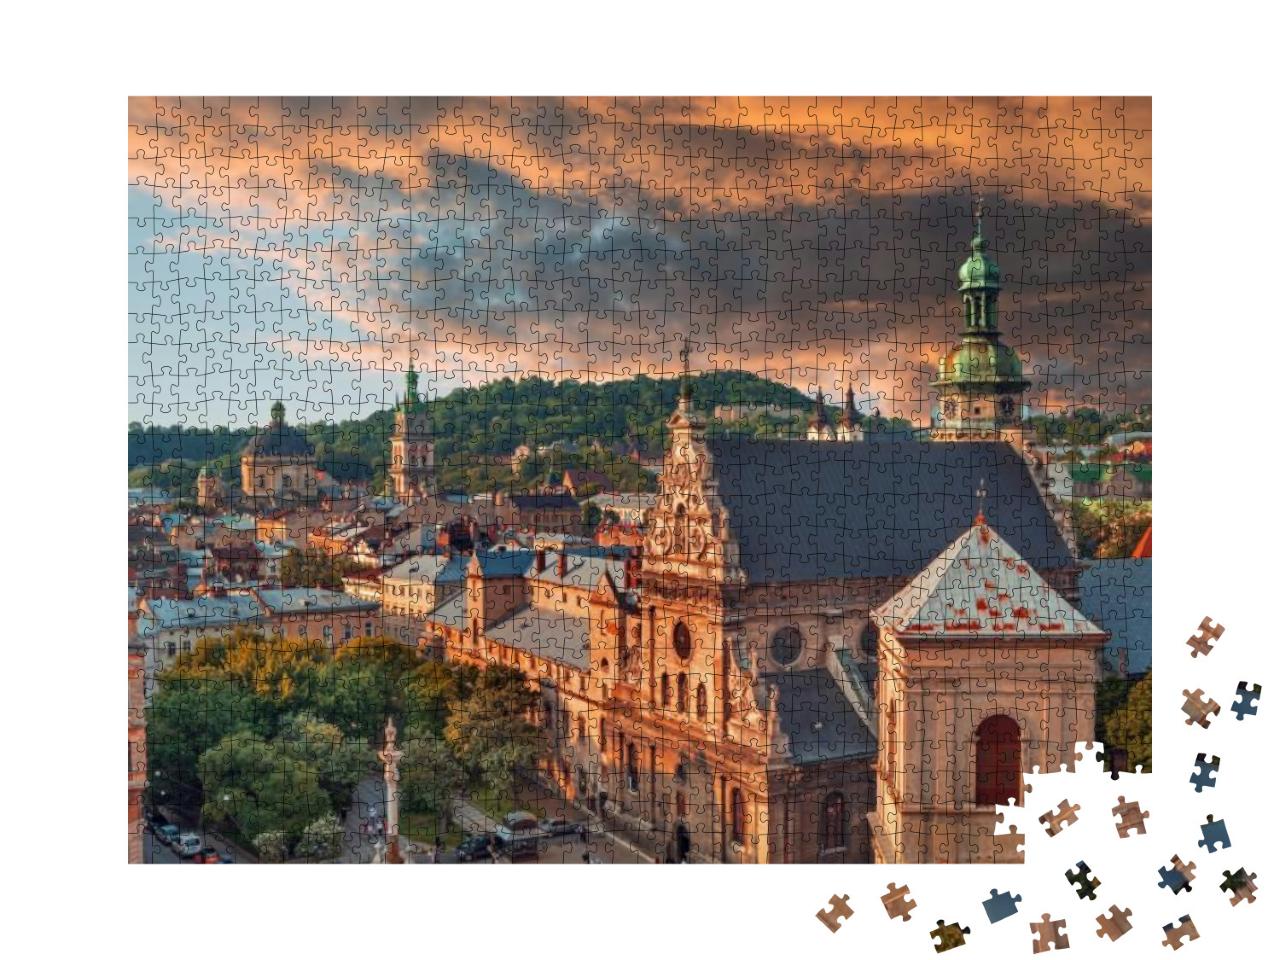 Puzzle 1000 Teile „Historisches Zentrum von Lwiw bei Sonnenuntergang“